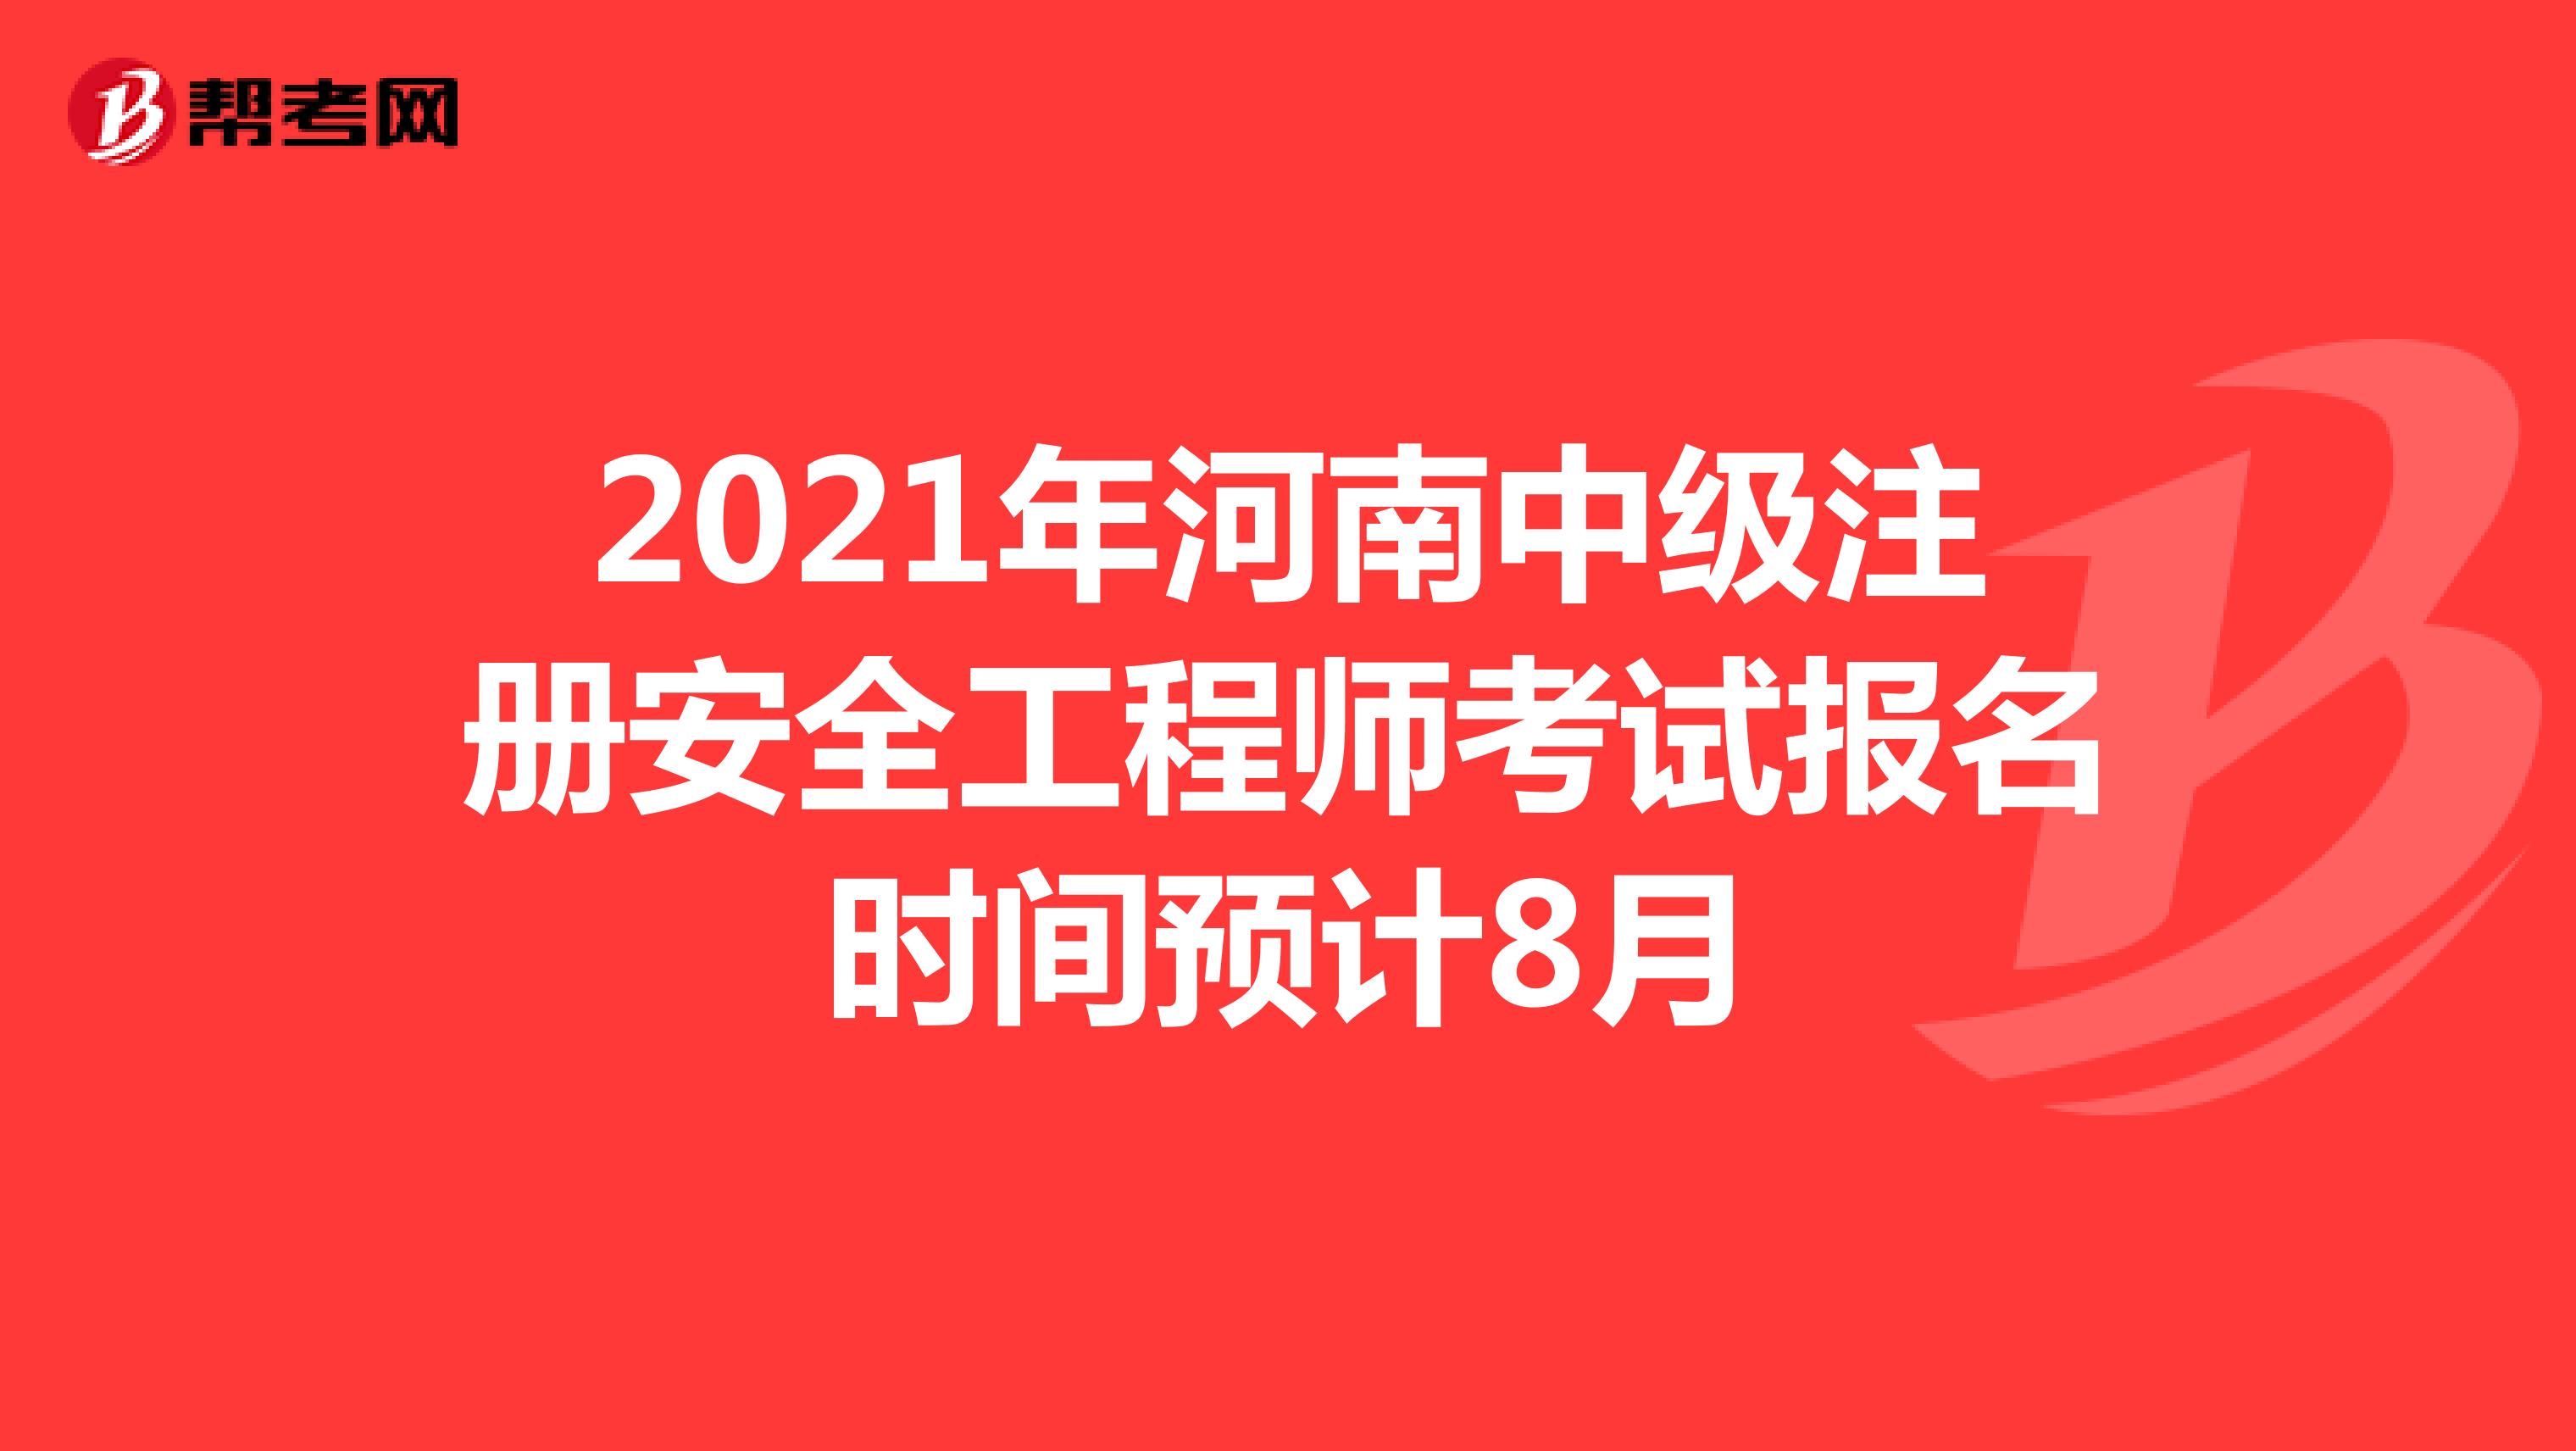 2021年河南中级注册安全工程师考试报名时间预计8月